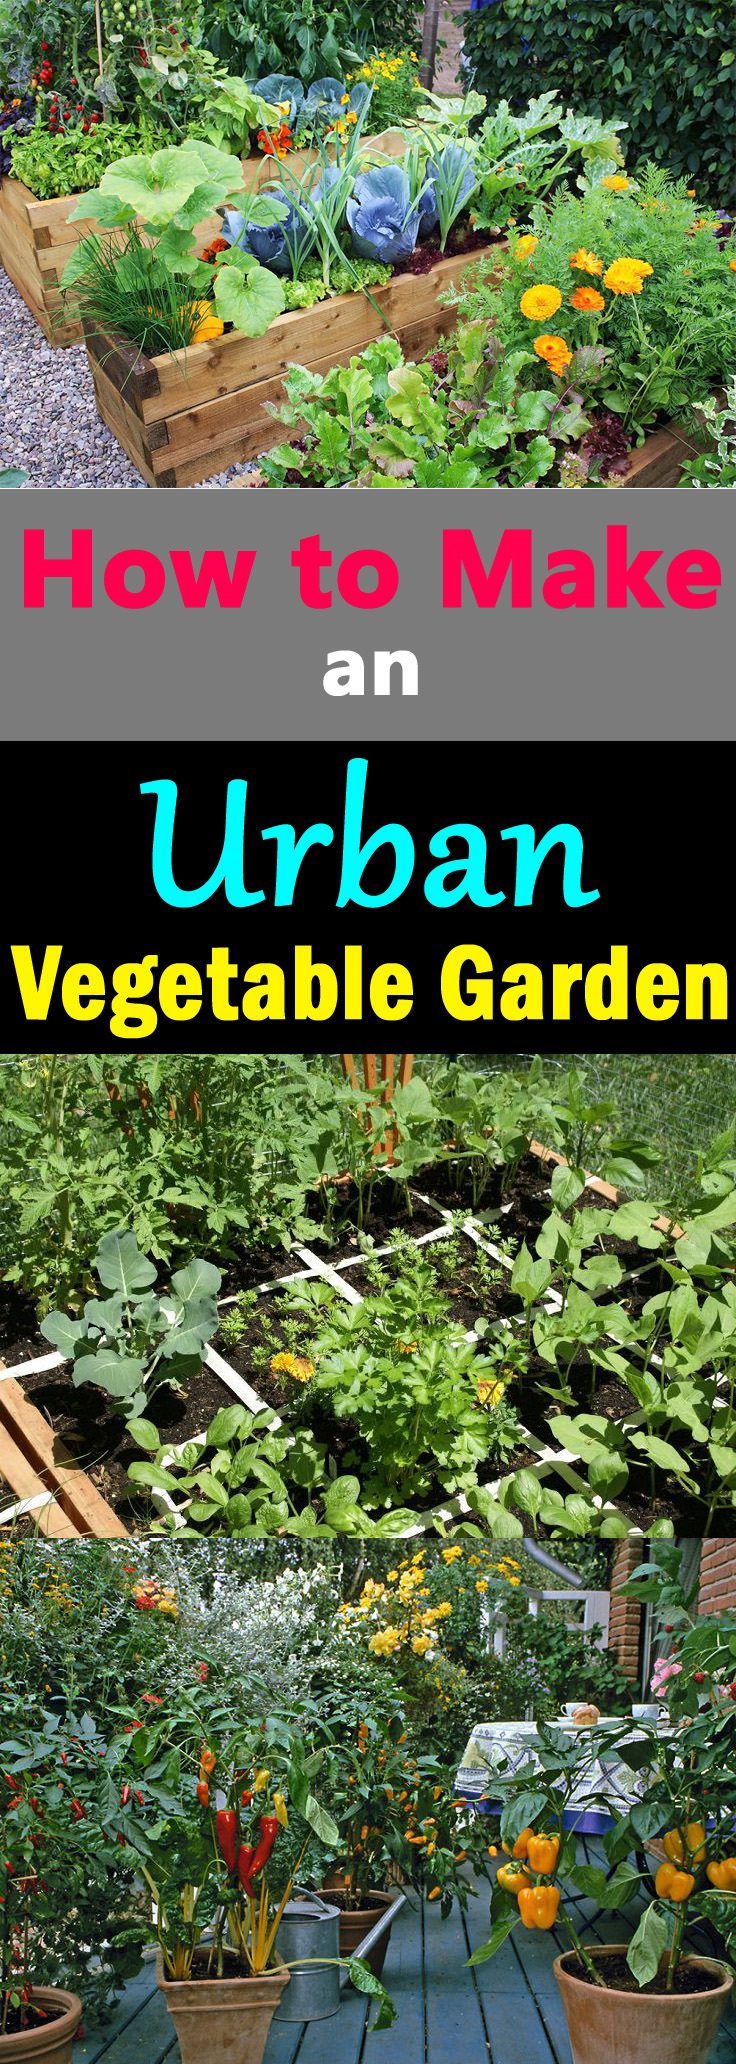 creating an urban vegetable garden photo - 2